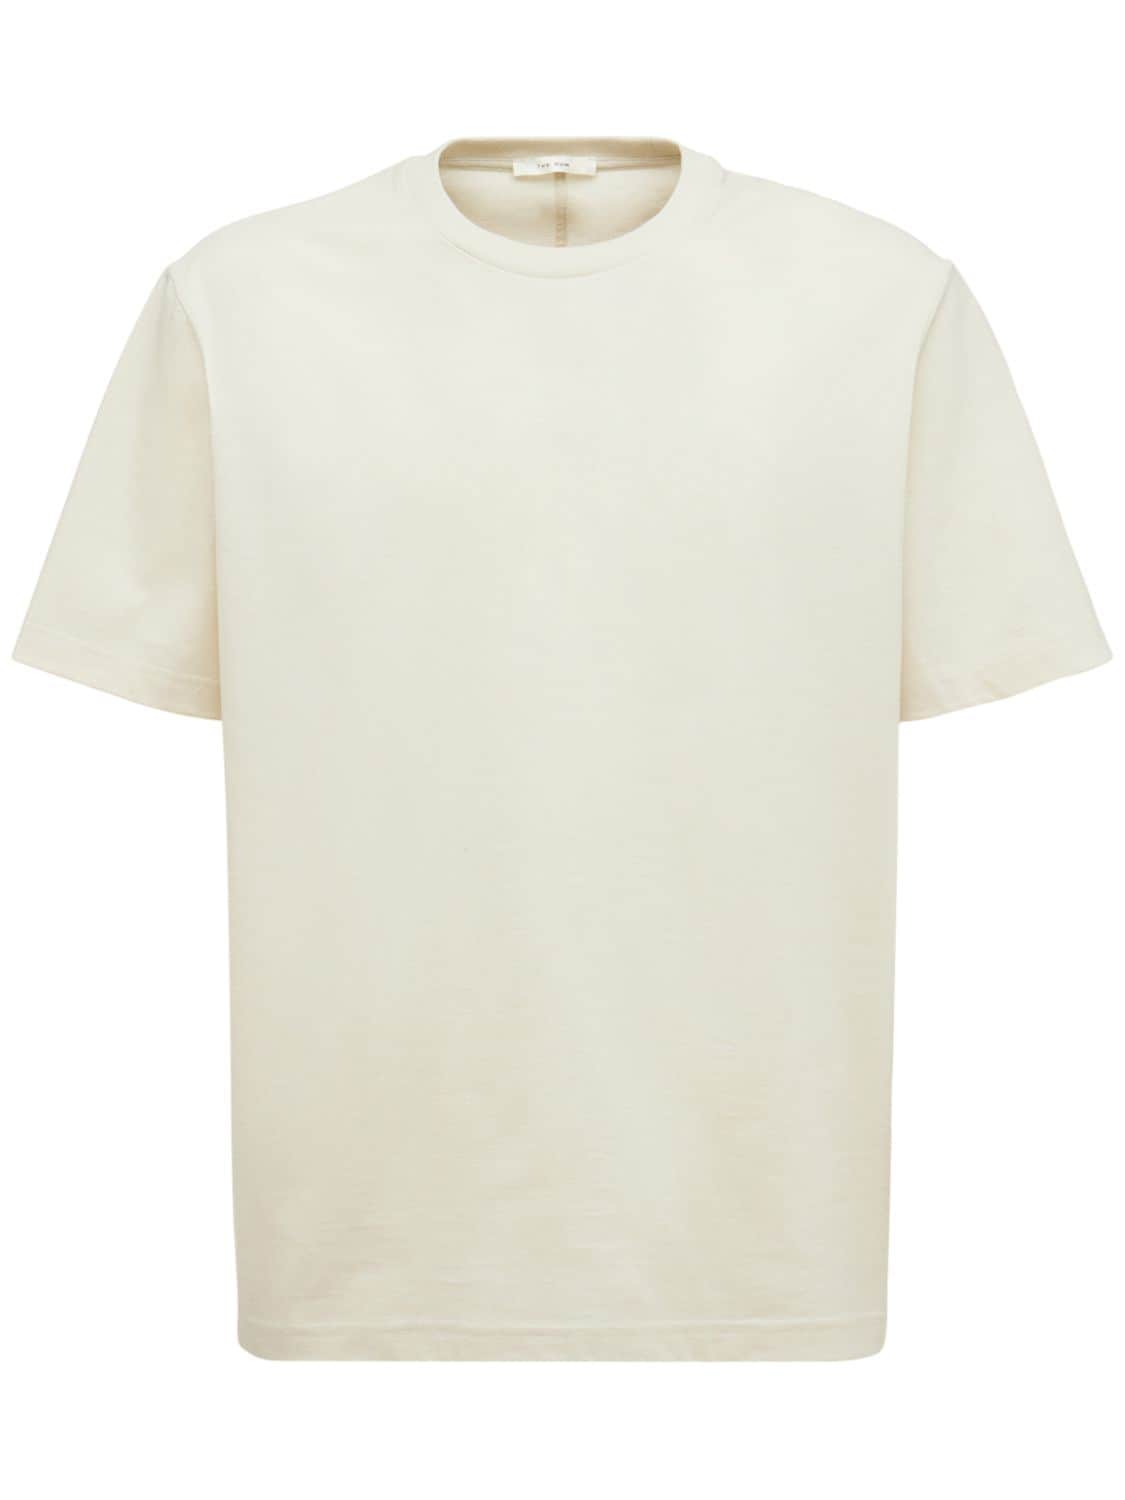 Errigal Cotton Jersey T-shirt